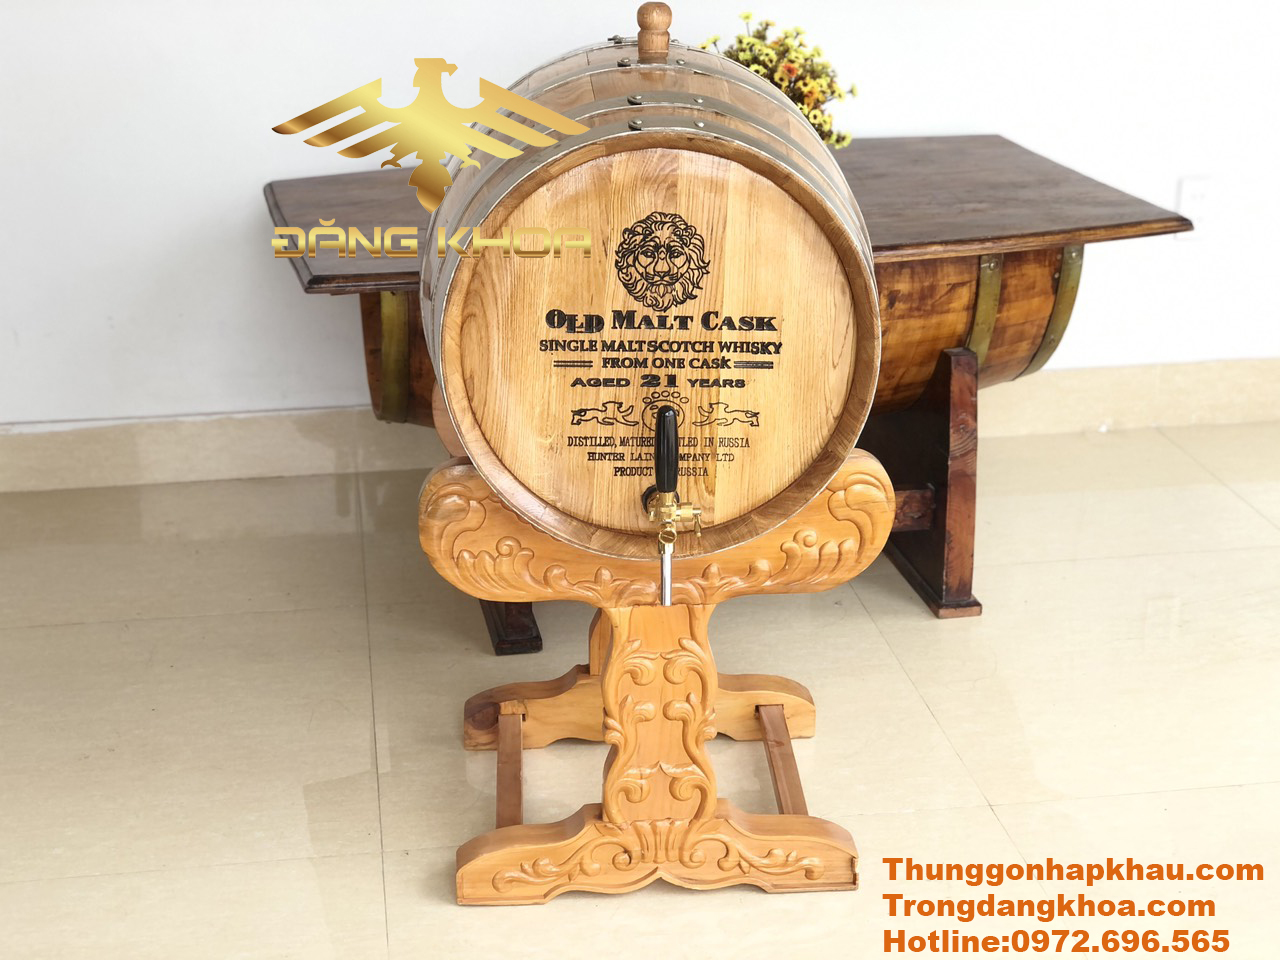 Hướng dẫn cách ngâm ủ rượu bằng thùng gỗ sồi